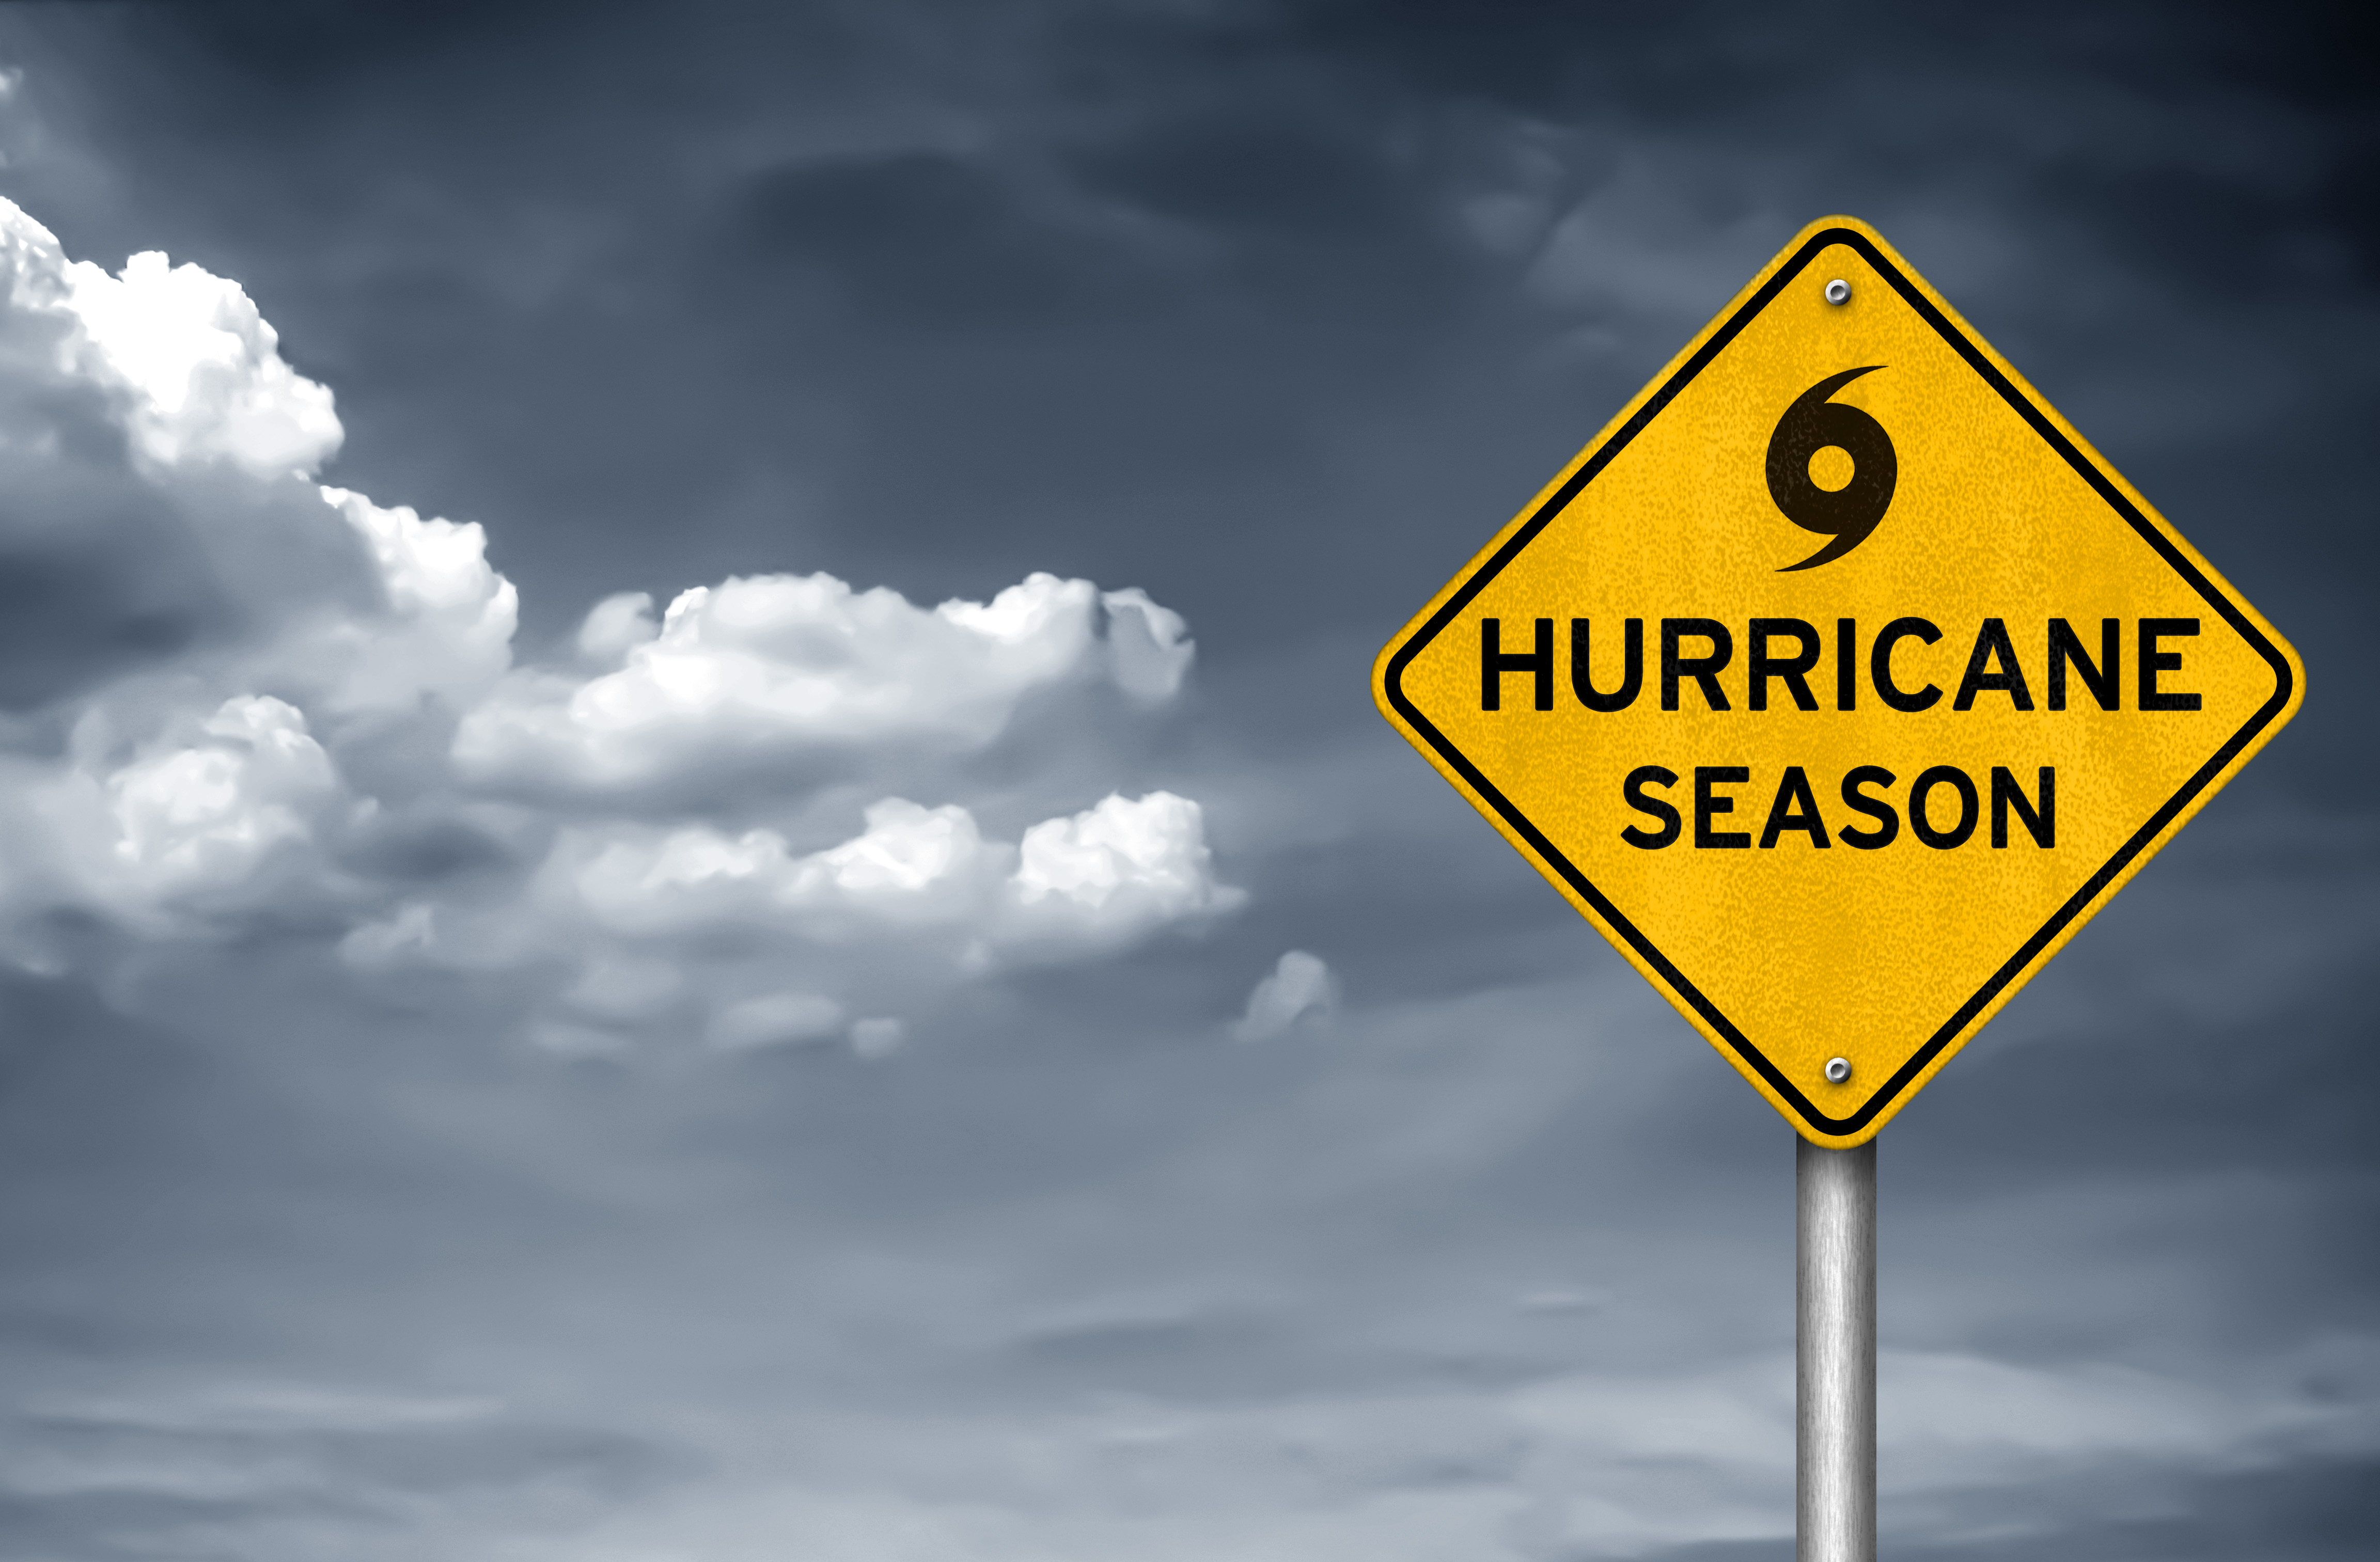 Hurricane season image